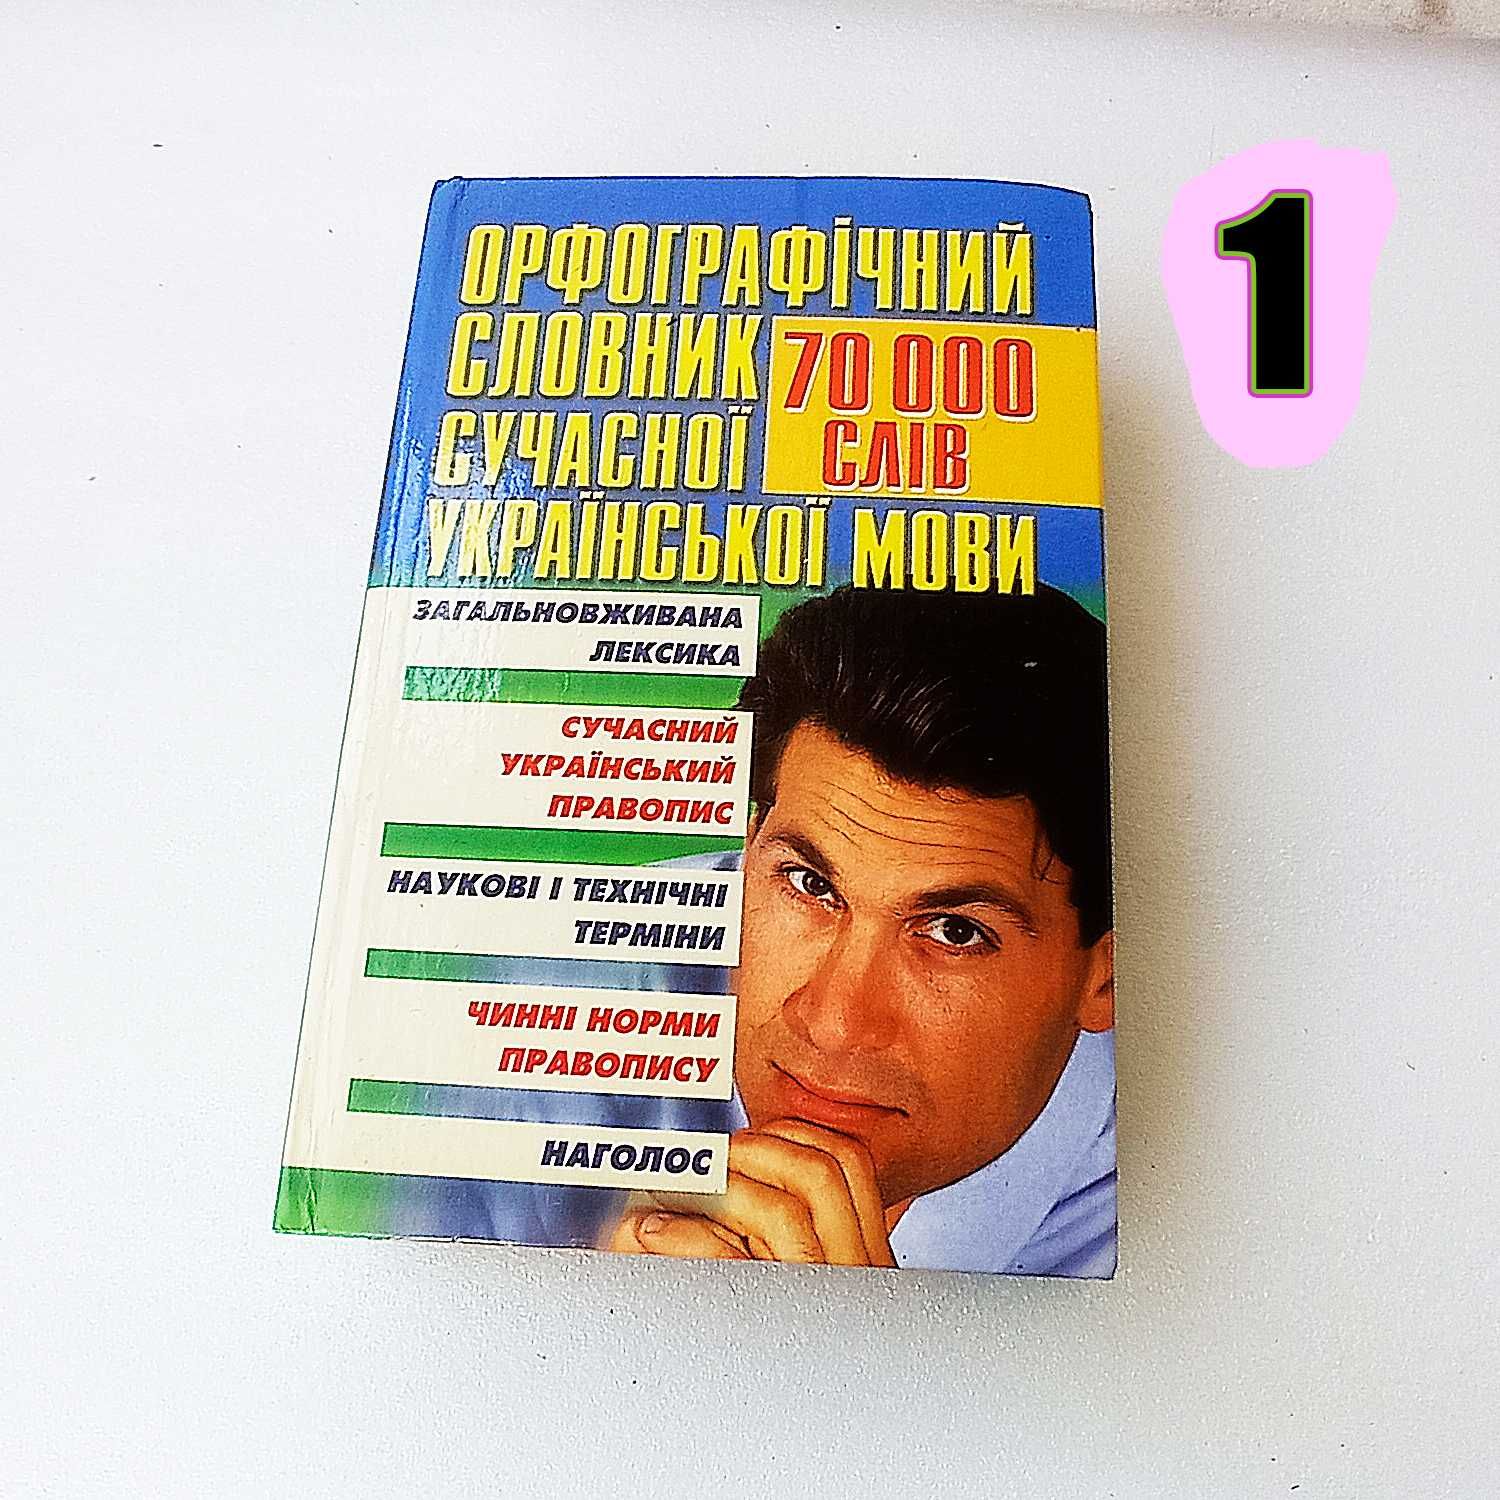 Украинско-русский словарь,Украинский язык